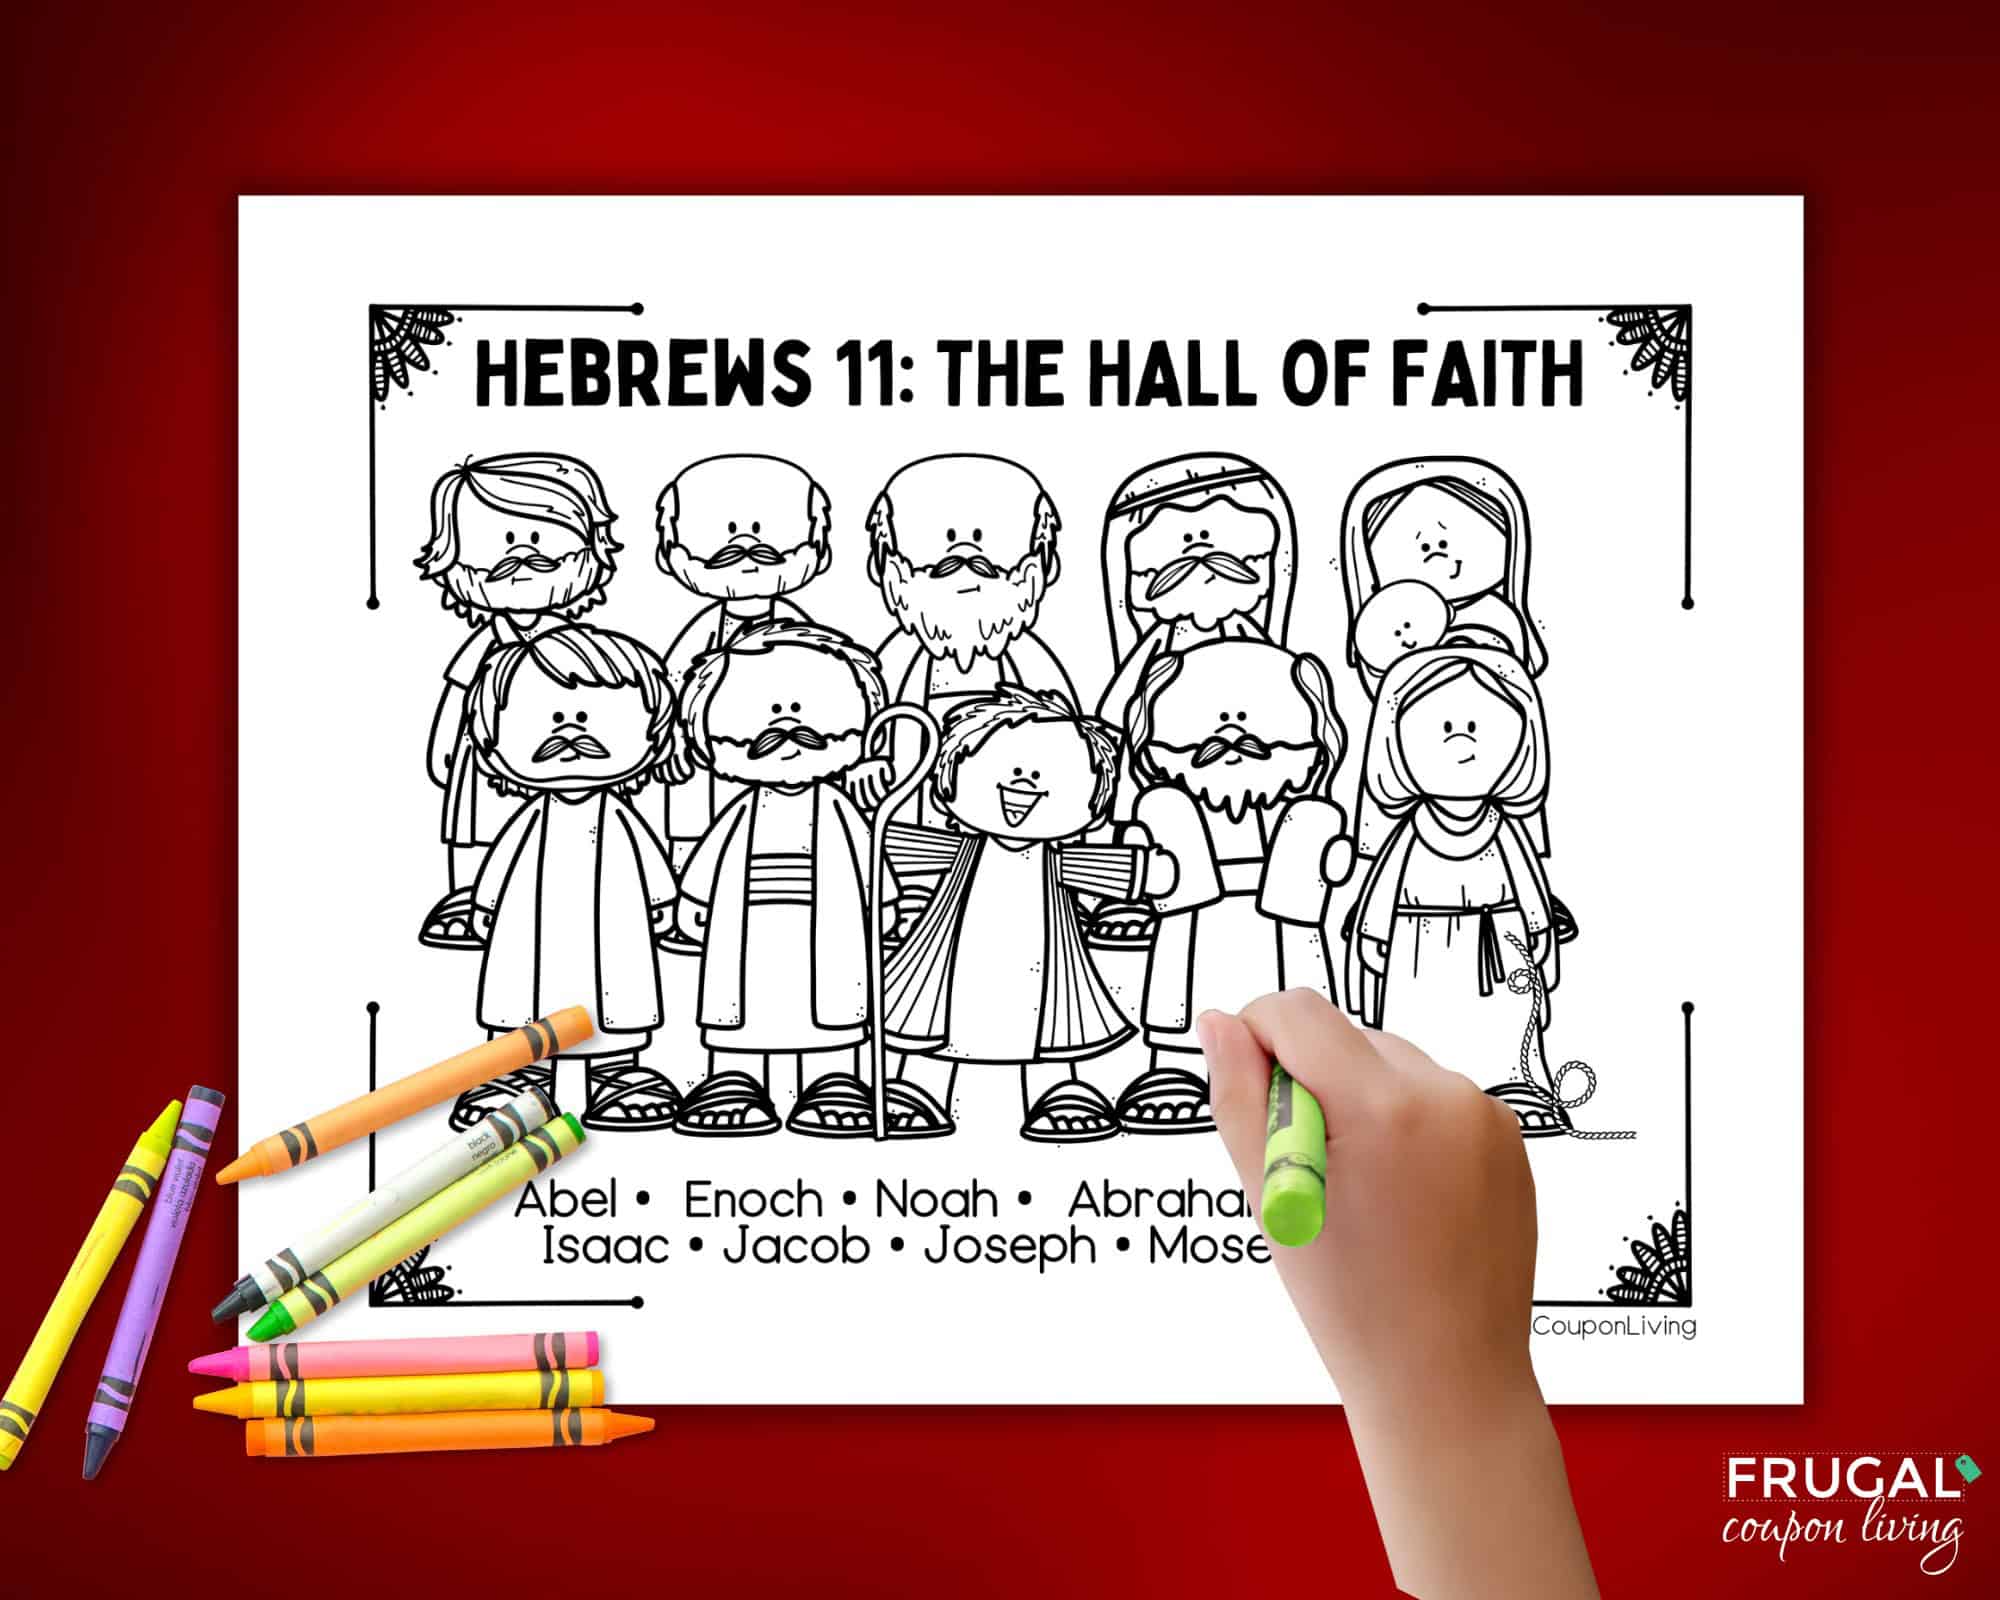 hebrews 11 hall of faith list of people